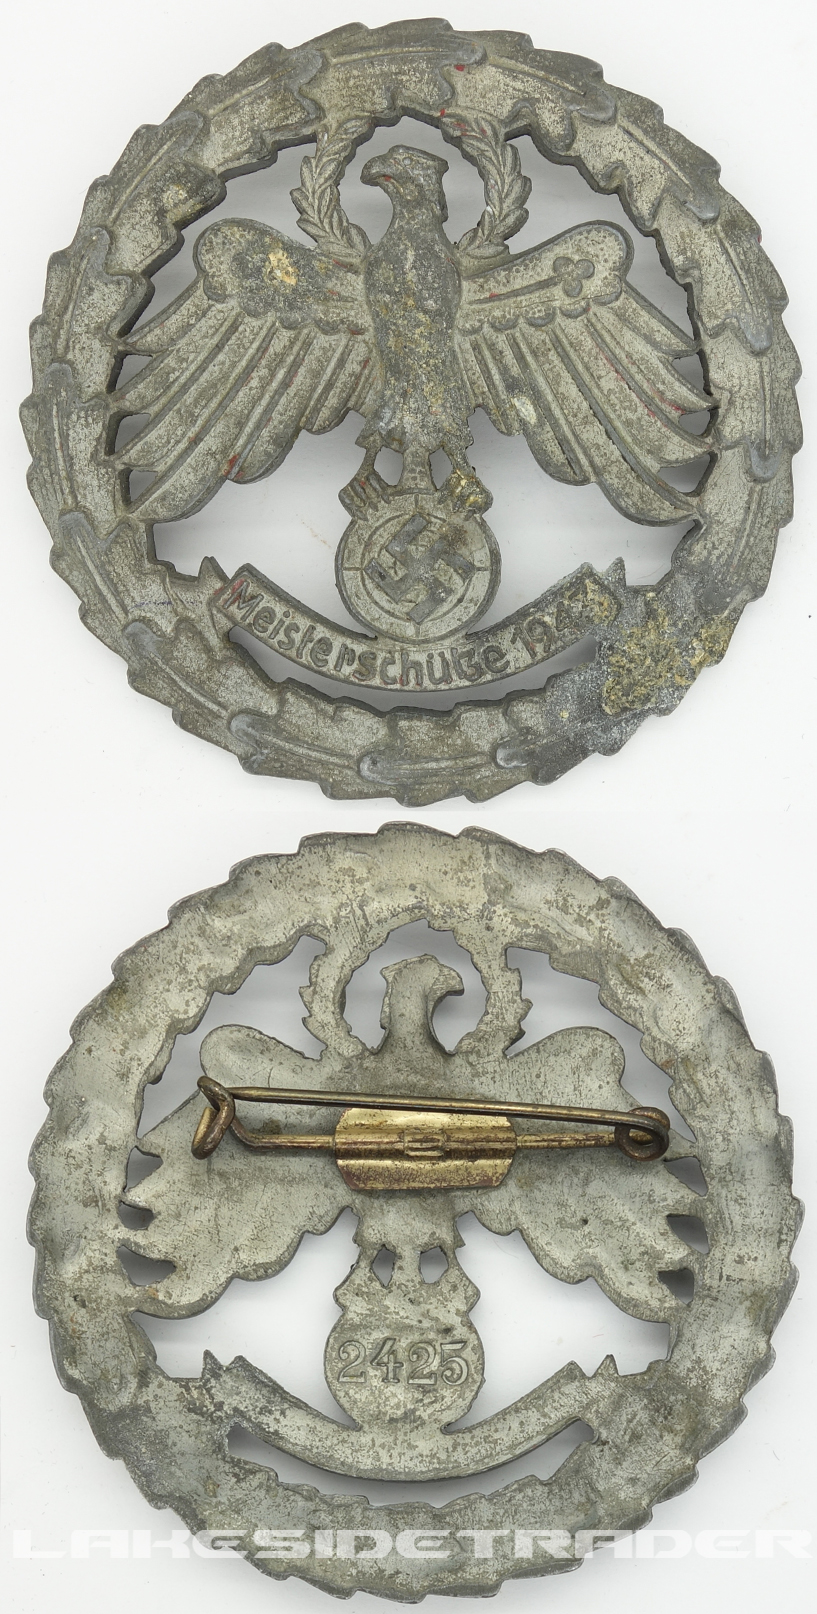 Gold 1943 Meisterschutze Shooting Badge